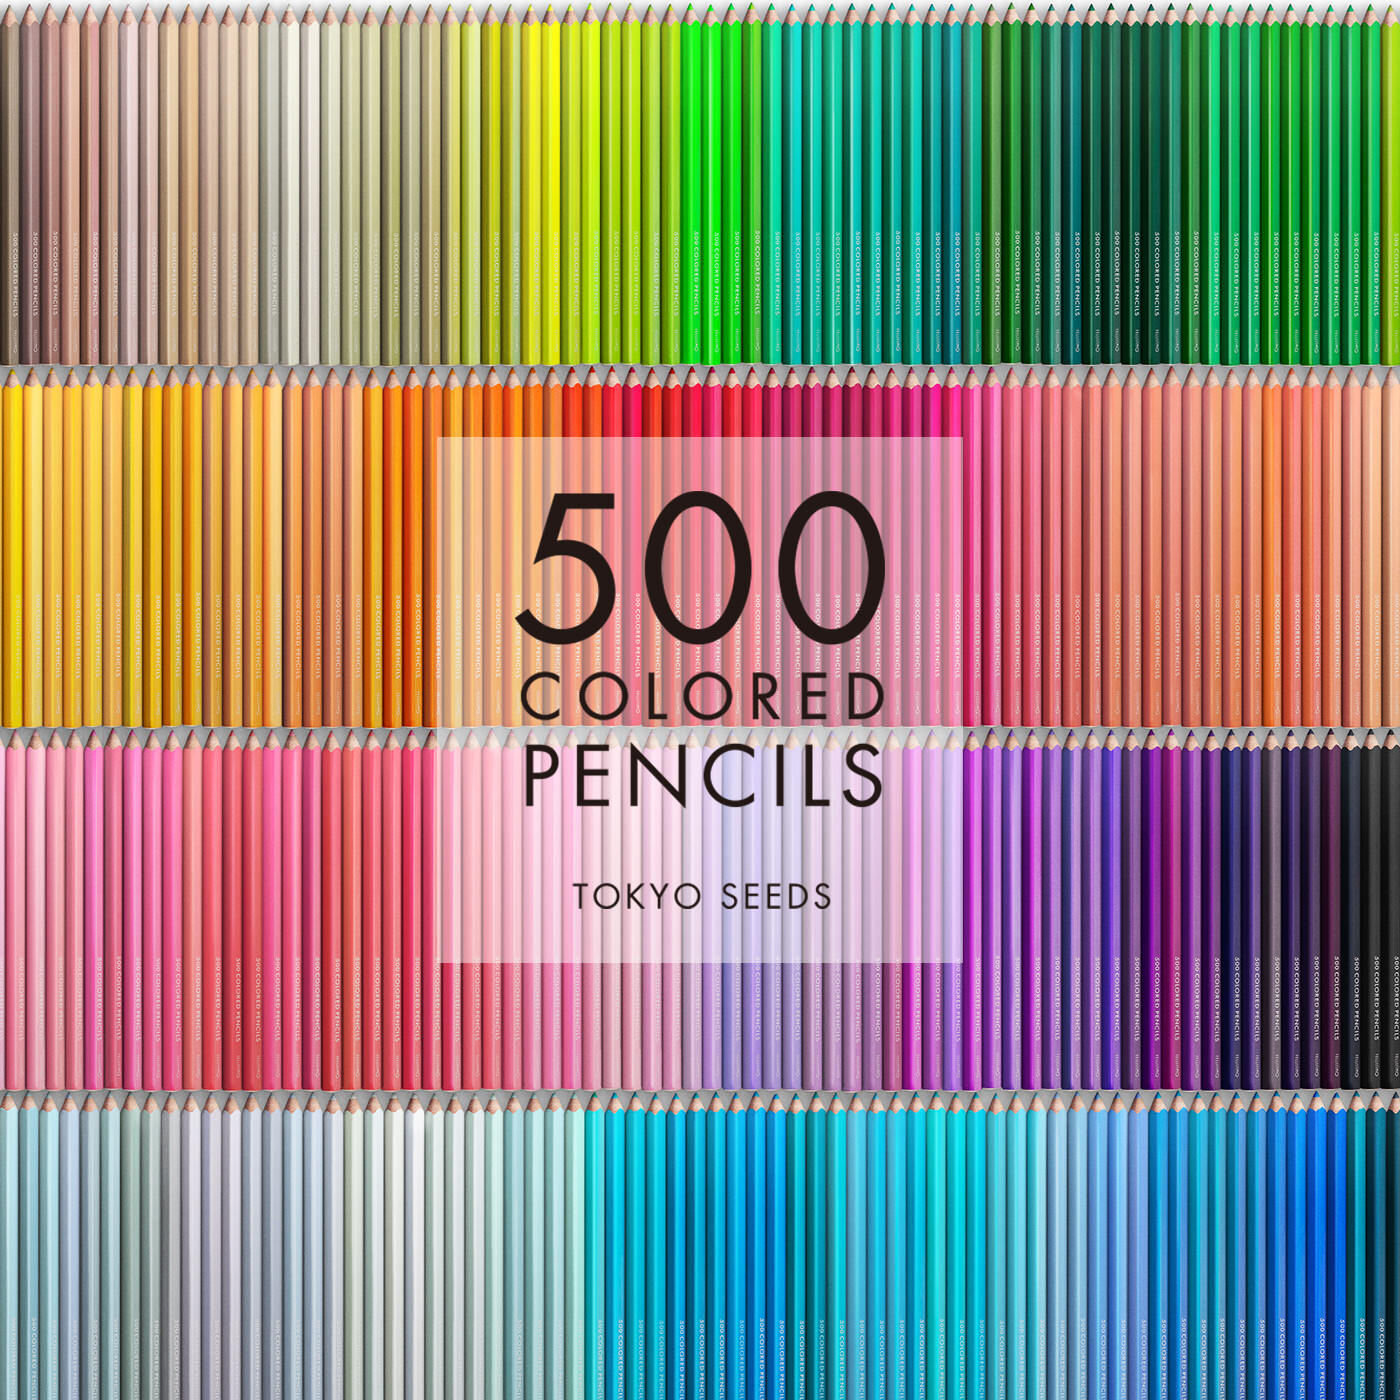 Real Stock|【400/500 CHAMPAGNE BUBBLE】500色の色えんぴつ TOKYO SEEDS|1992年、世界初の「500色」という膨大な色数の色えんぴつが誕生して以来、その販売数は発売当初から合わせると、世界55ヵ国10万セット以上。今回、メイド・イン・ジャパンにこだわり、すべてが新しく生まれ変わって登場しました。